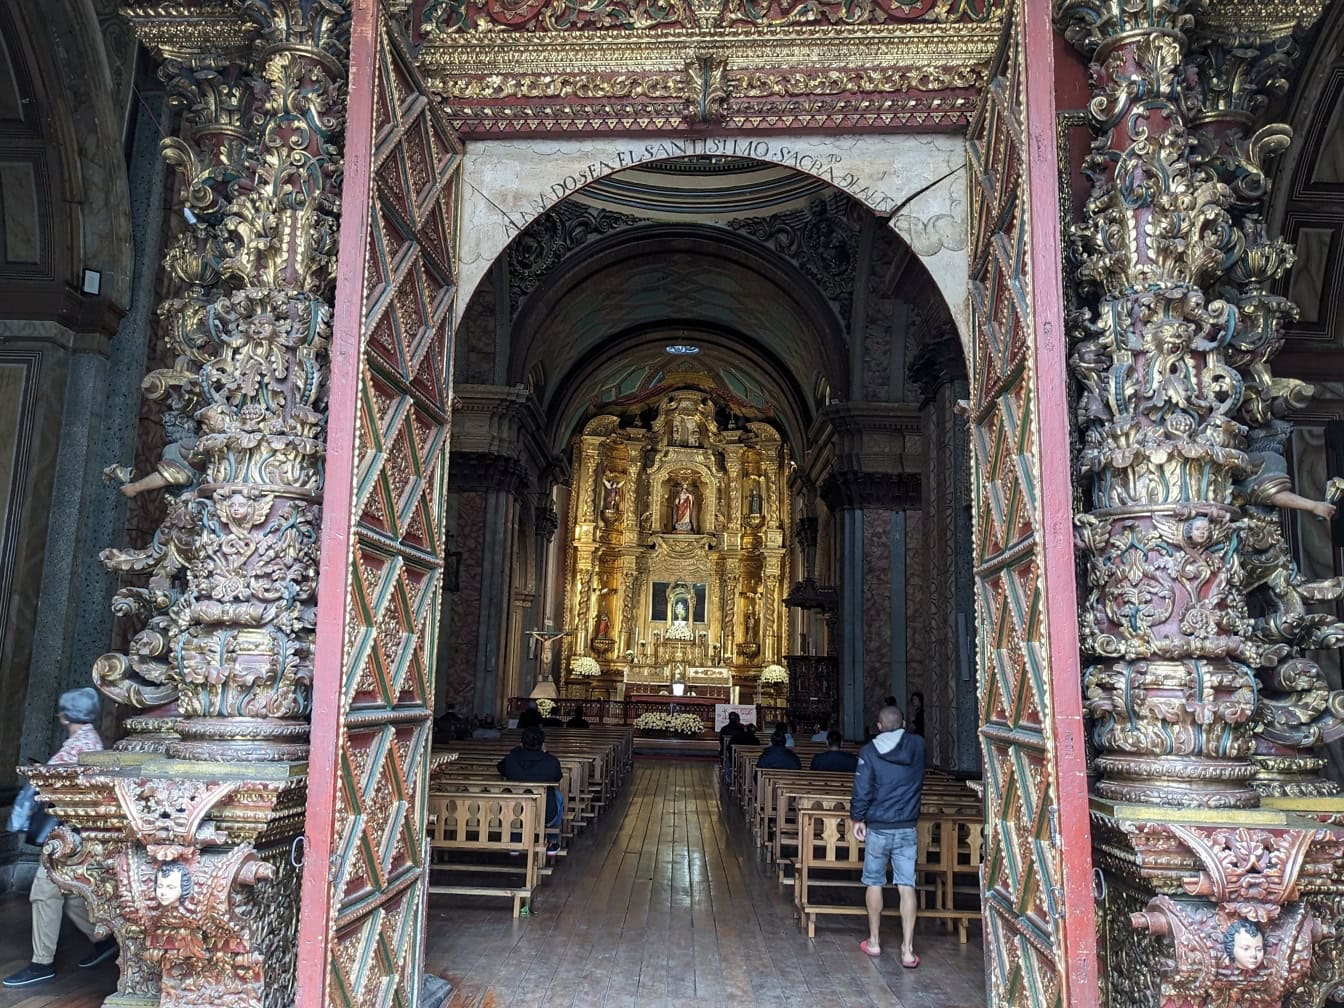 Entrée de l’église du Tabernacle, une église catholique de la Renaissance dans la ville de Quito en Équateur